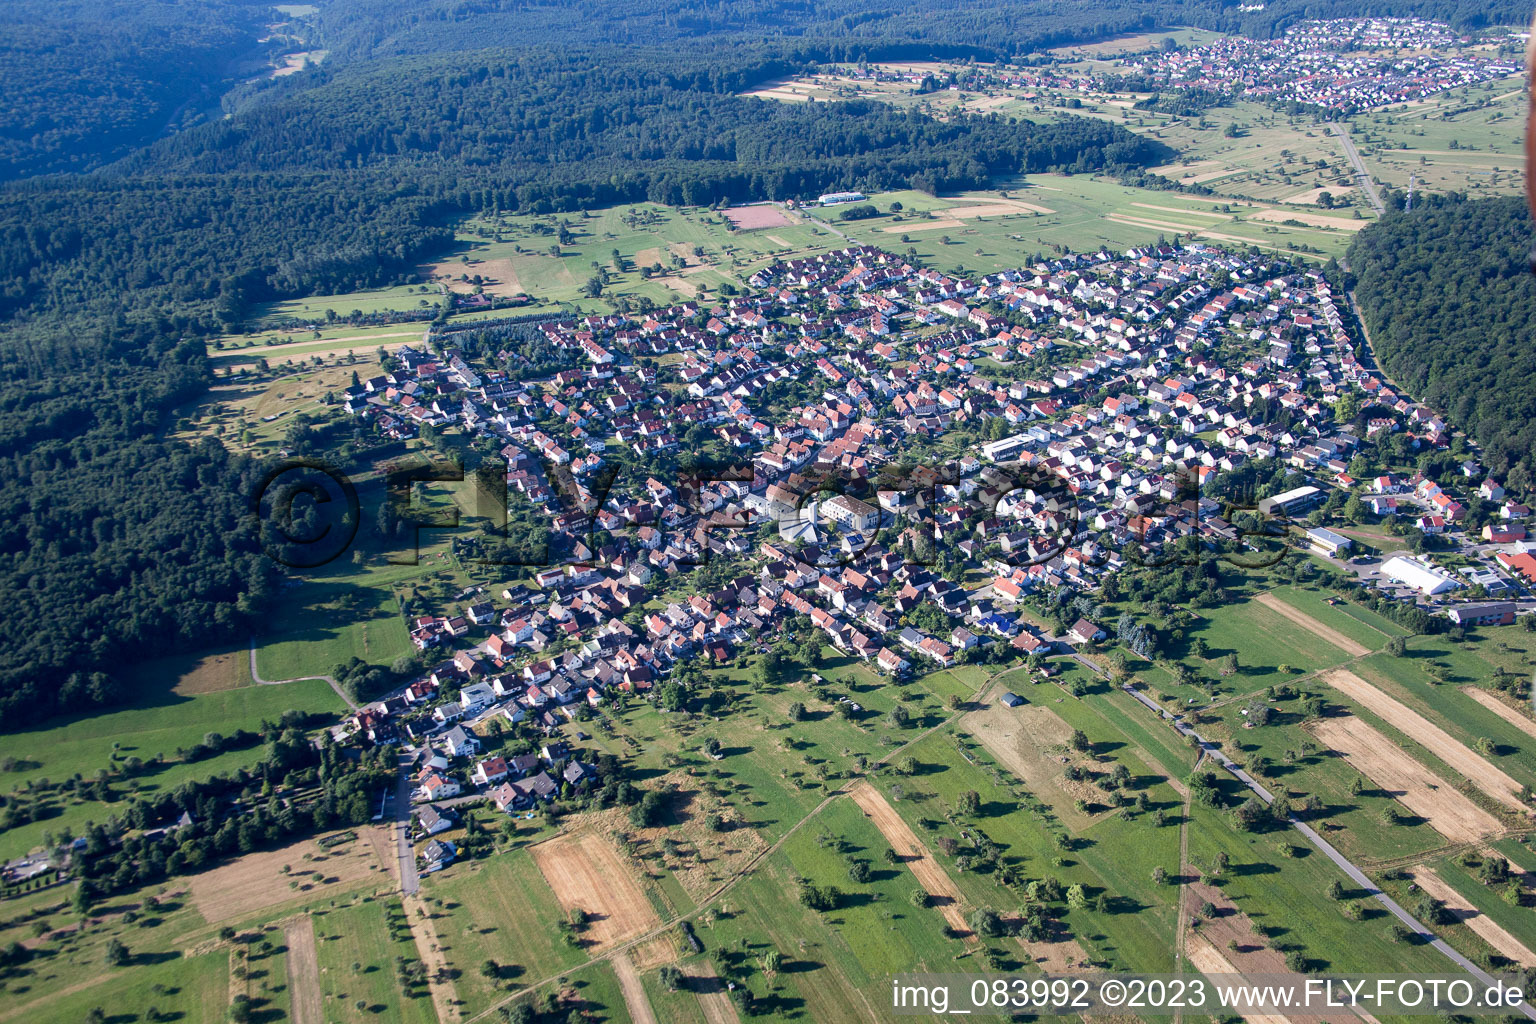 Luftbild von Ortsteil Spessart in Ettlingen im Bundesland Baden-Württemberg, Deutschland